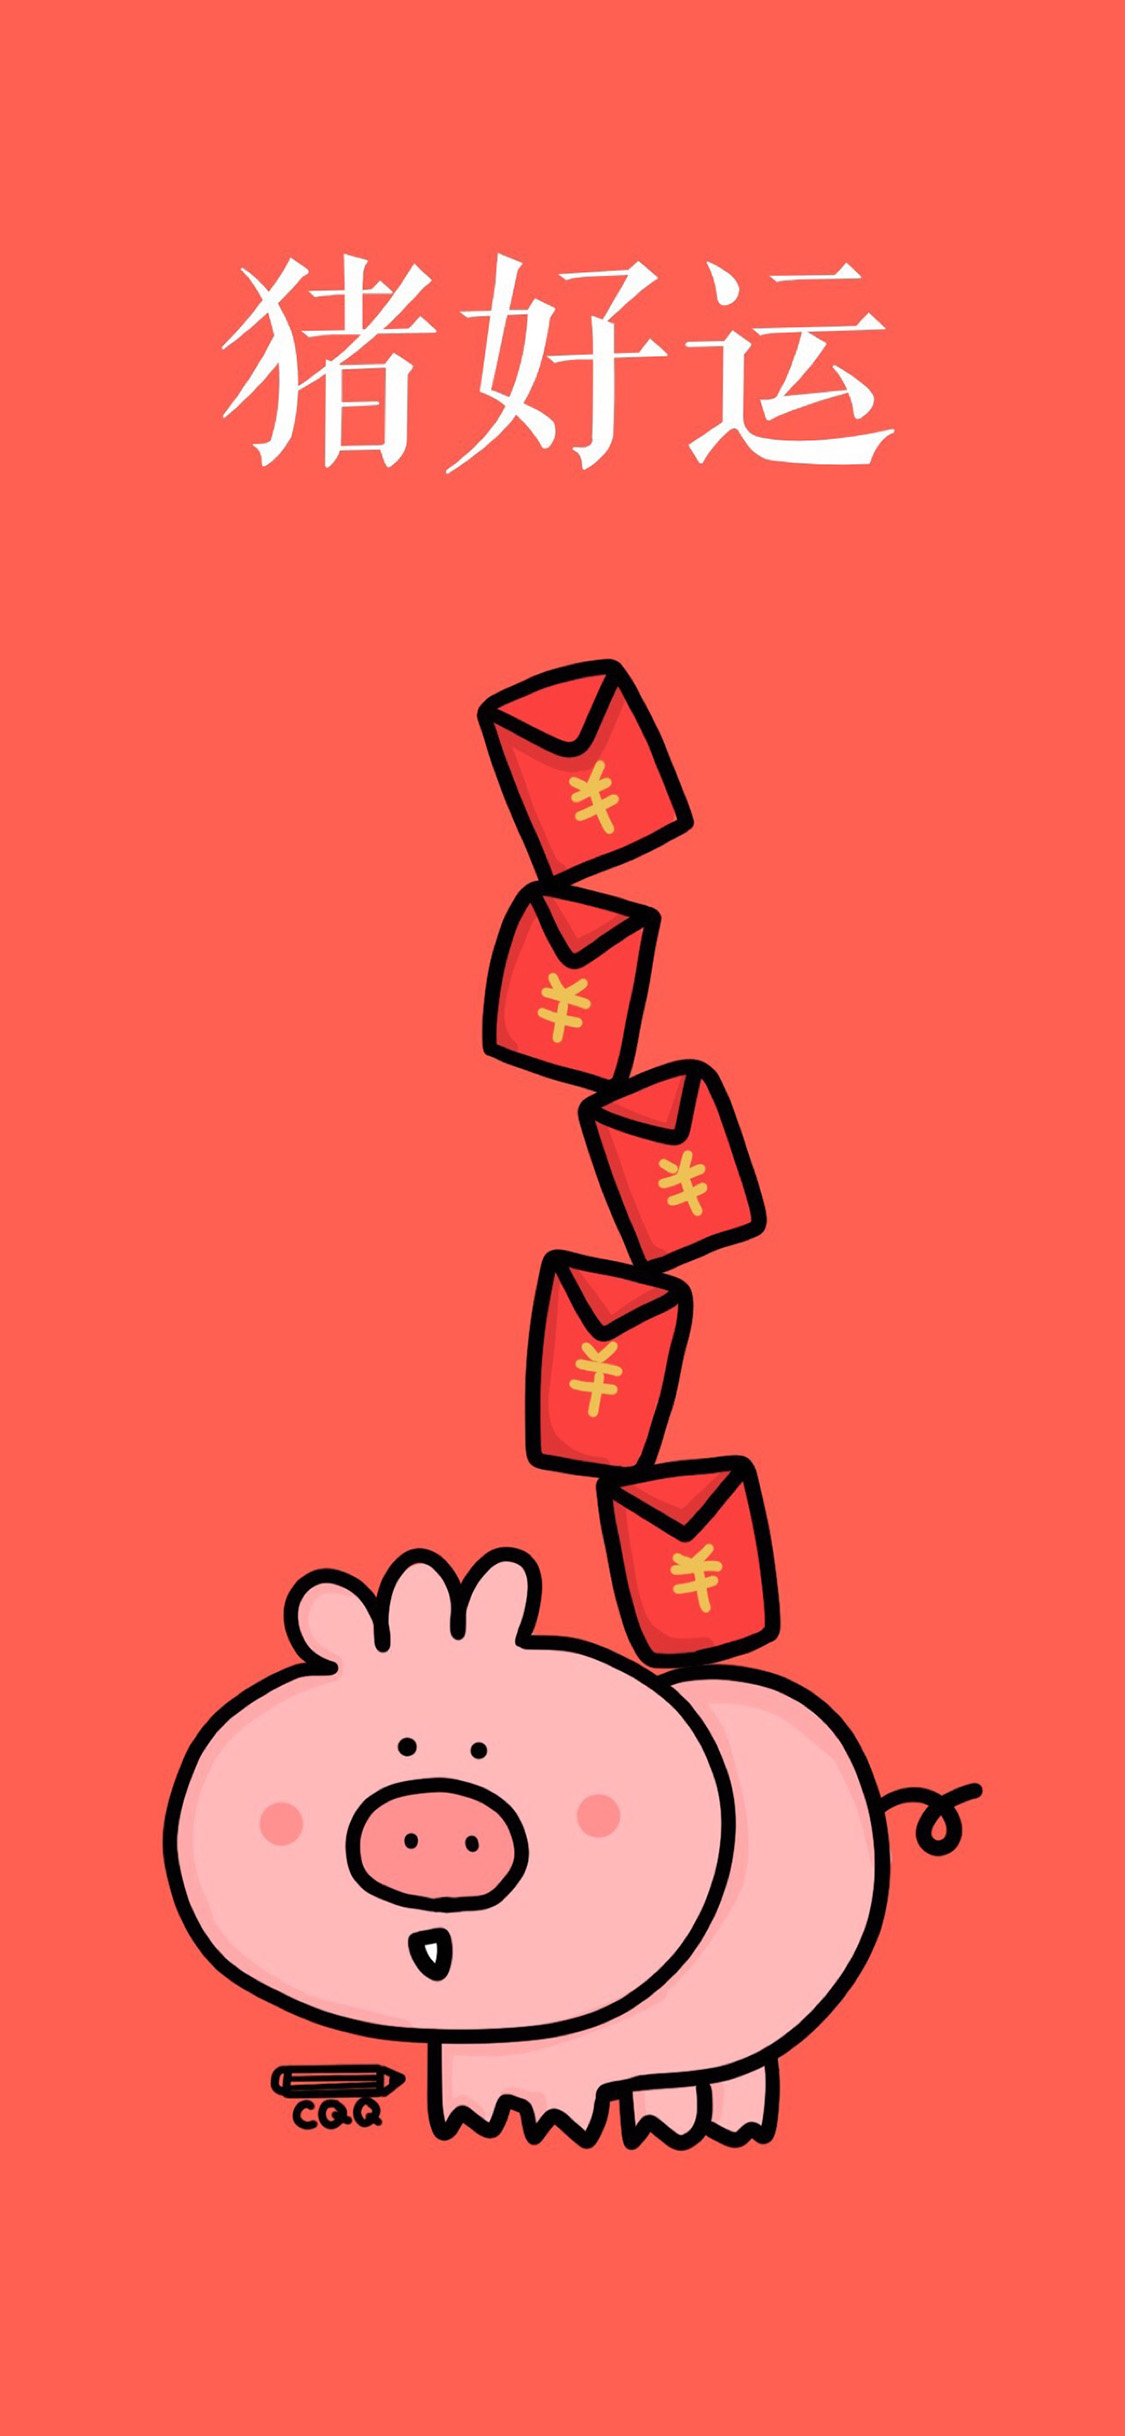 2019猪年红色手机壁纸大全 24张猪年开运手机壁纸推荐